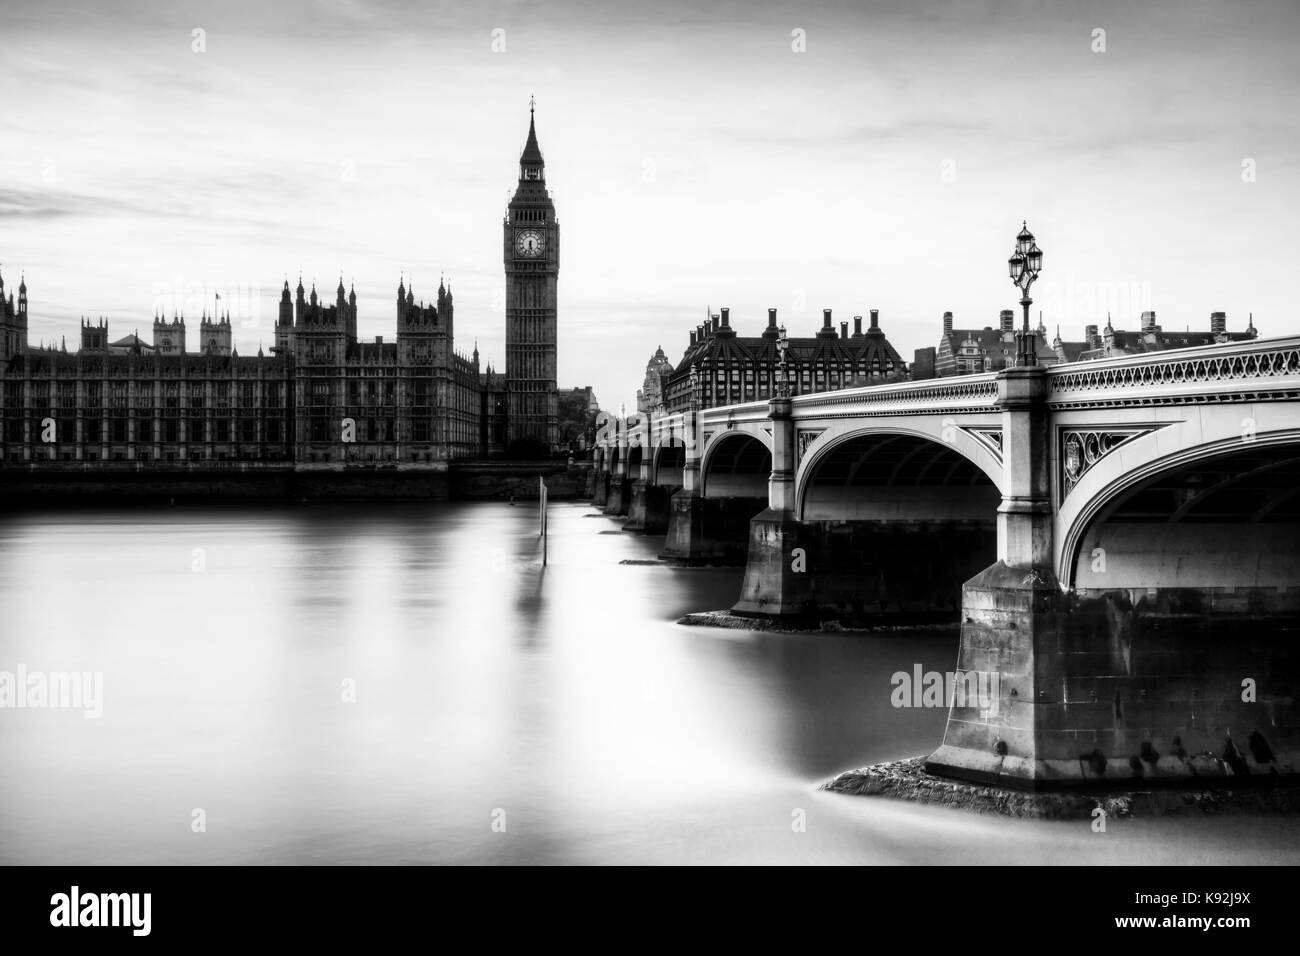 Les chambres du parlement (palais de Westminster) et le pont de Westminster, London, UK Banque D'Images